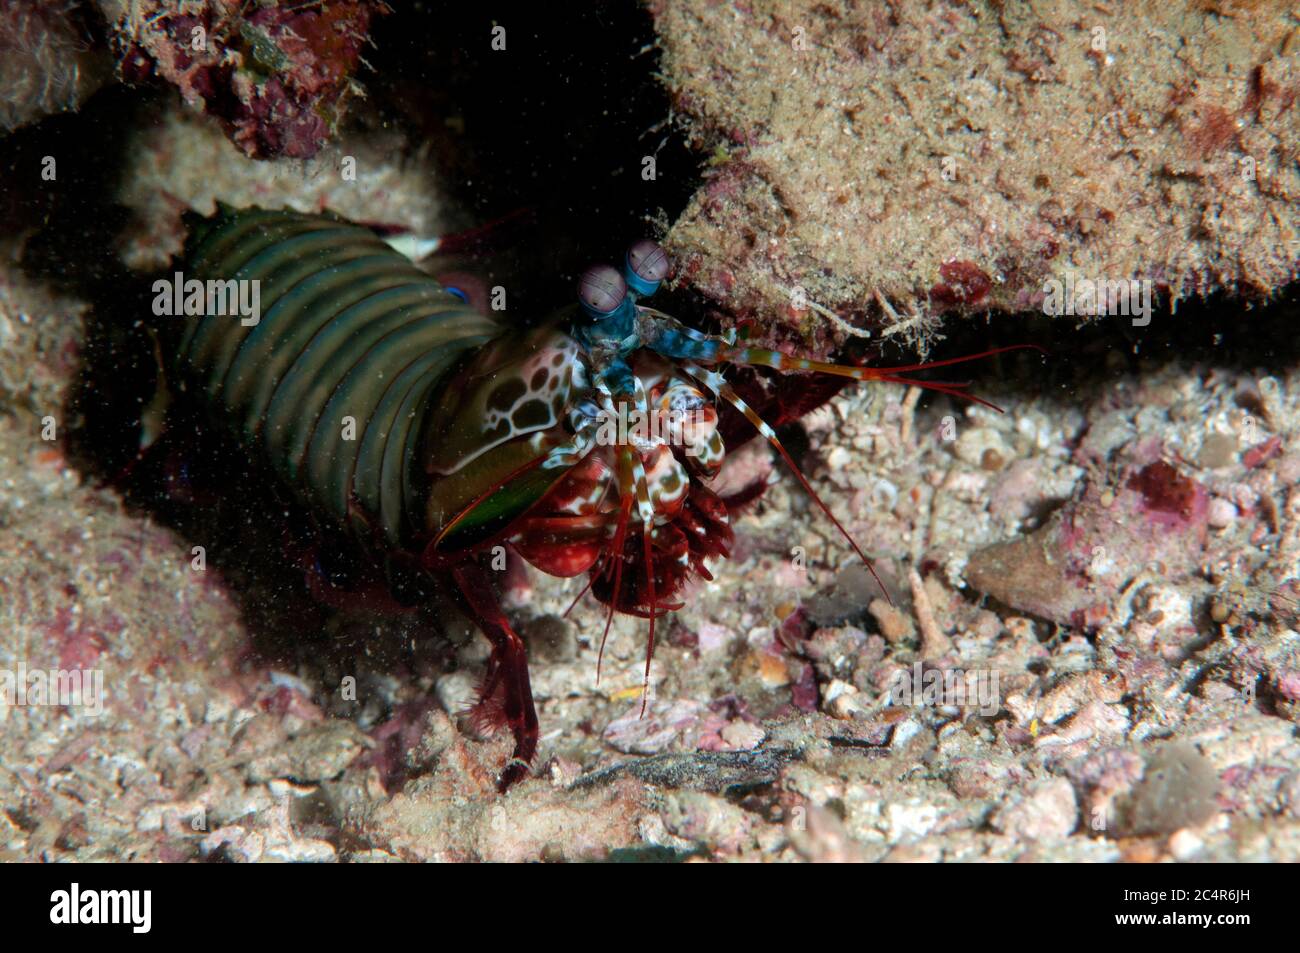 Peacock mantis shrimp, Odontodactylus scyllarus, Mabul Kapalai, Malaysia Stock Photo